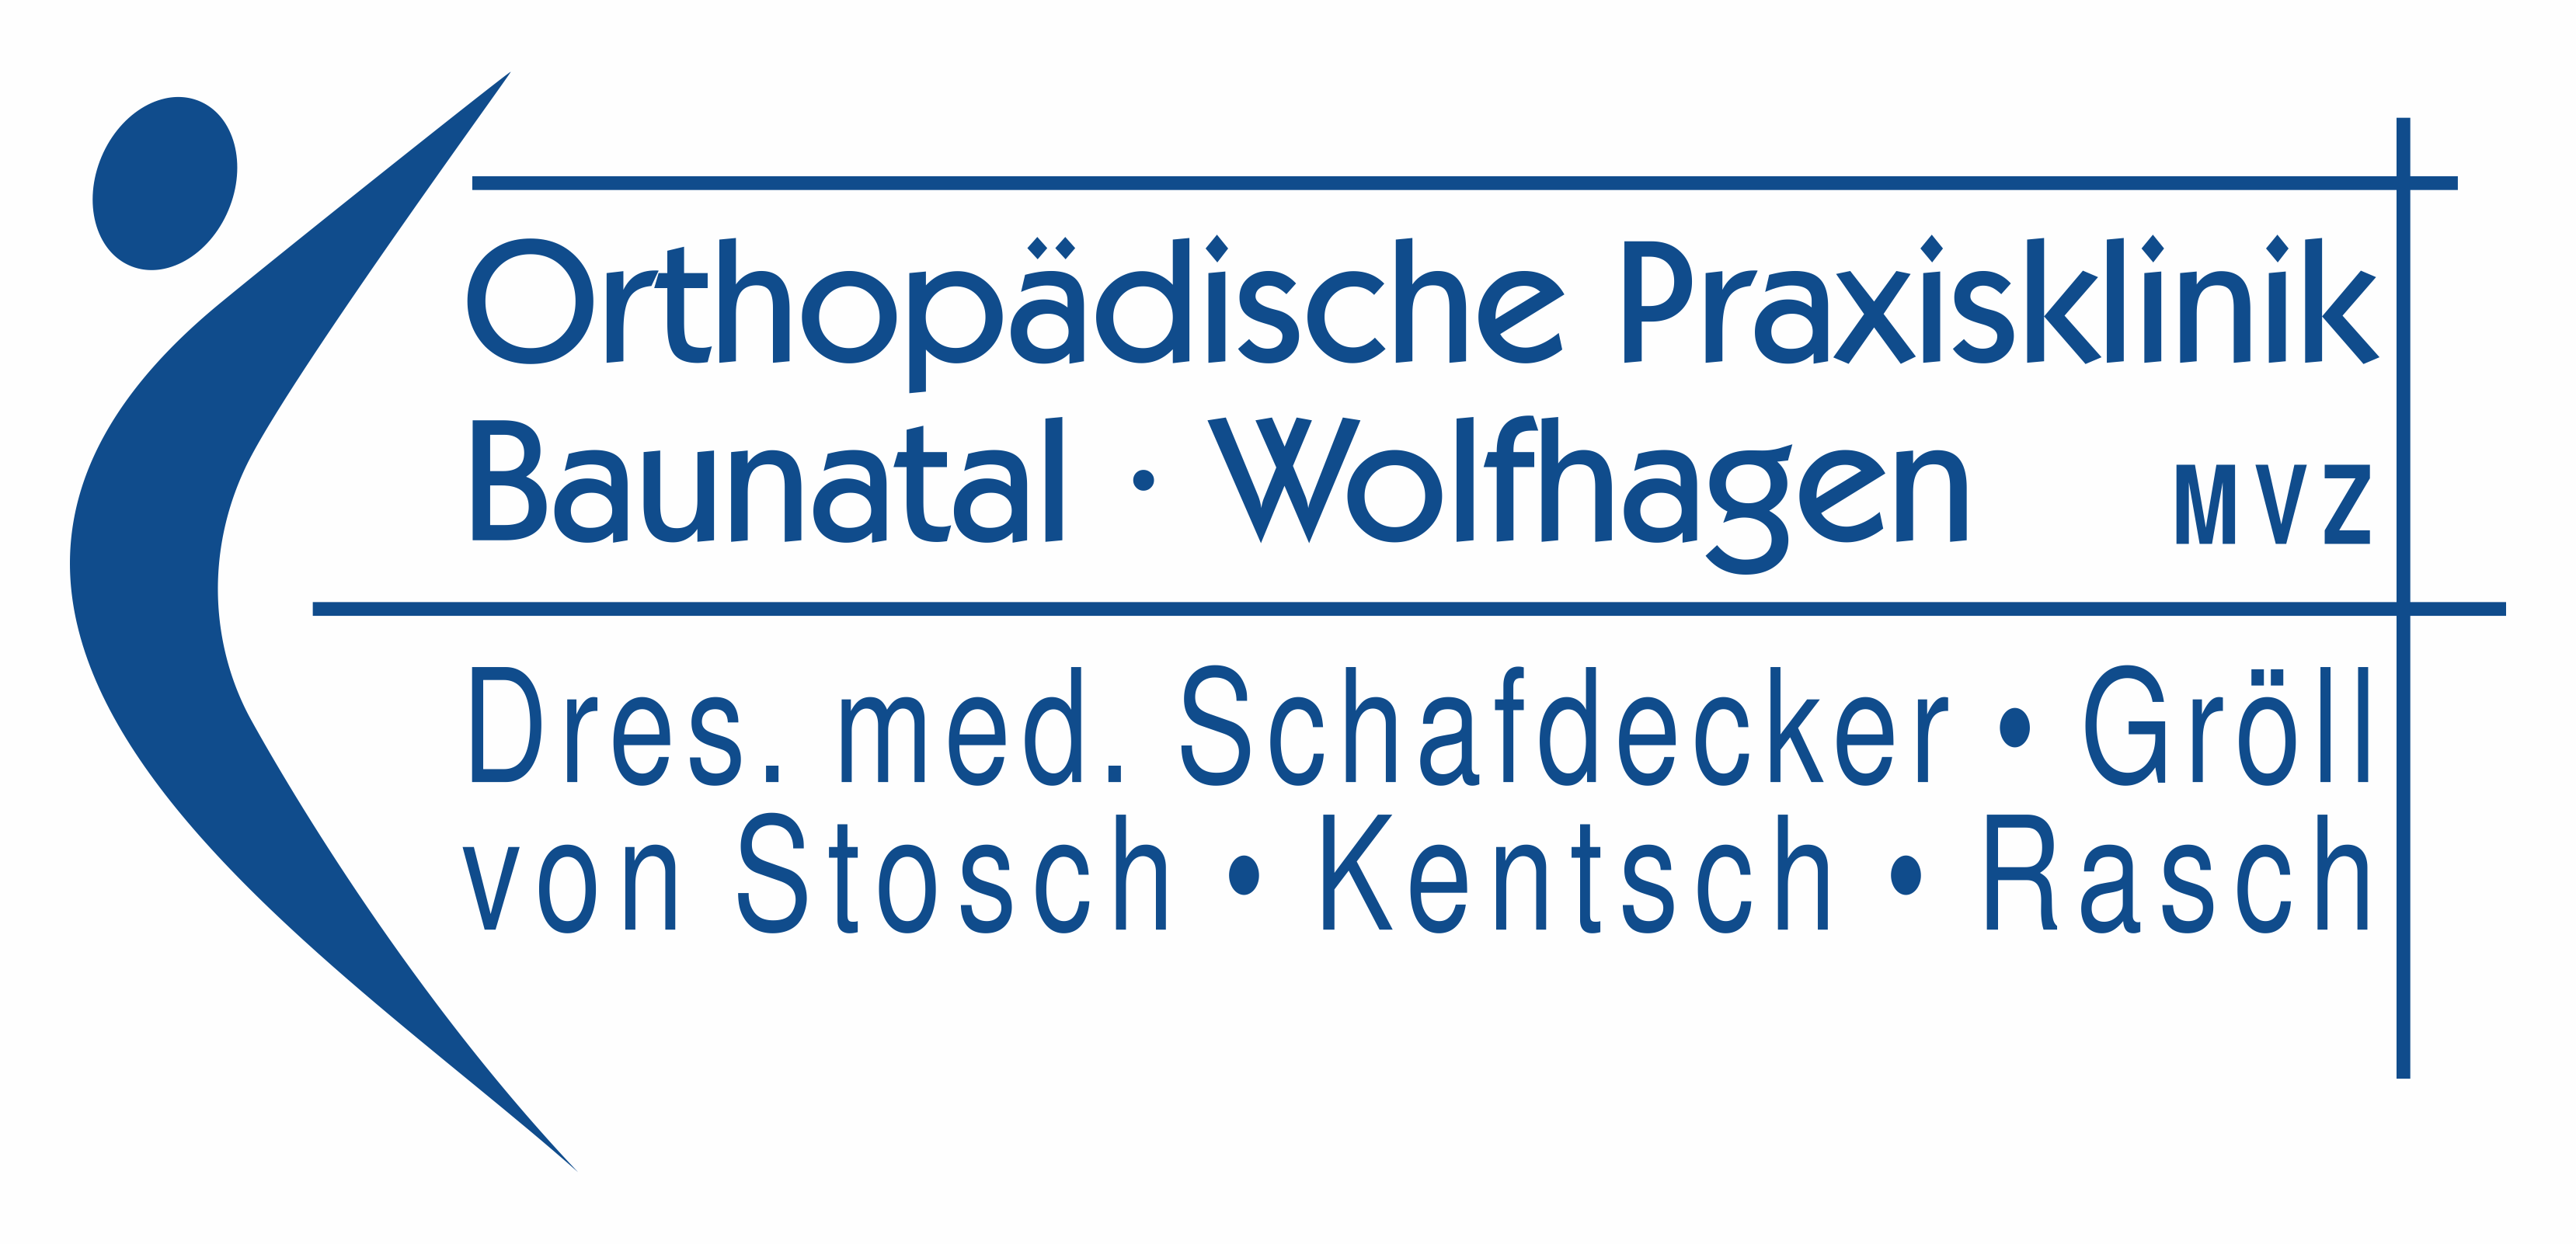 Orthopädische Praxisklinik Baunatal / Wolfhagen